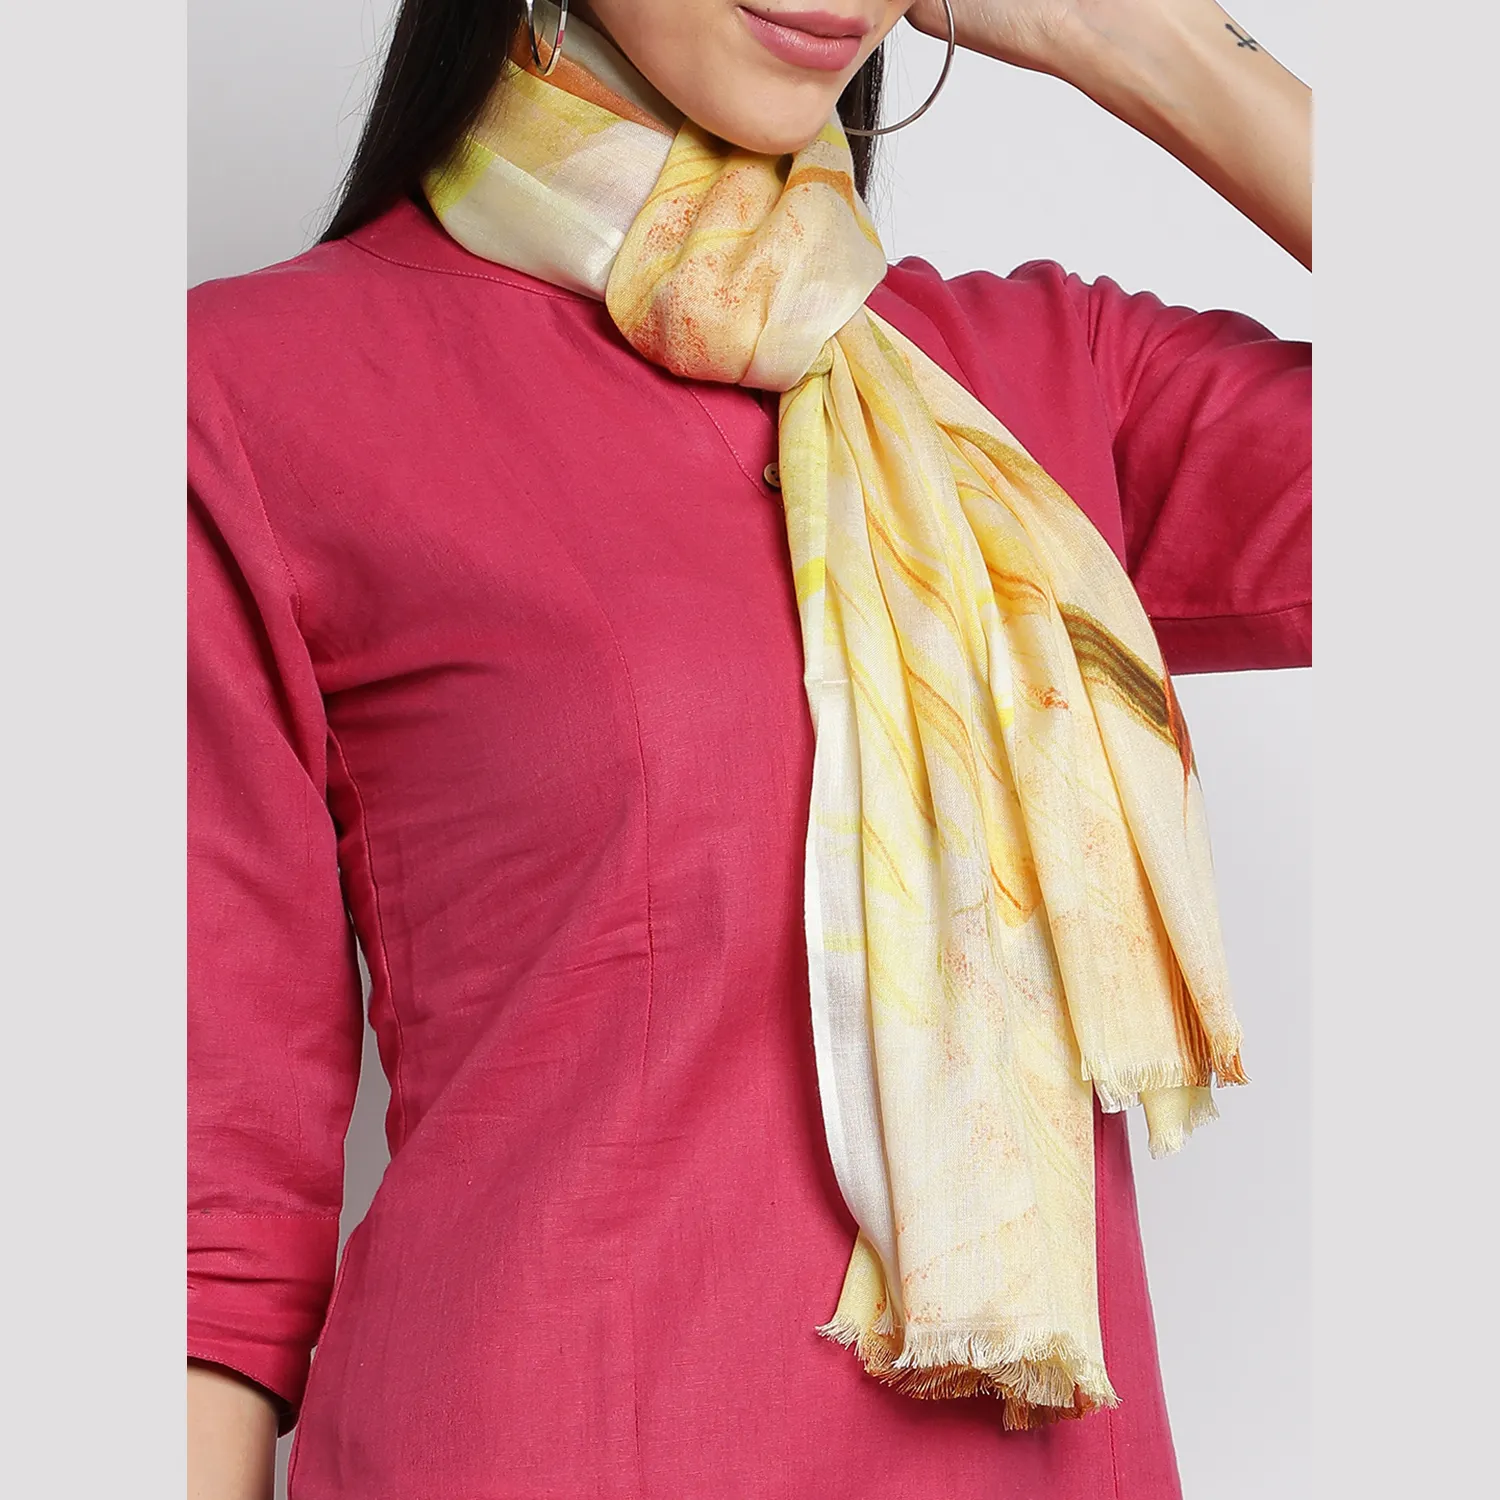 Modal Prints Neueste Schals für Frauen Lässig Soft Smooth Touch Haut freundlich Maßge schneidert mit Modal Made By Zed Aar Exports